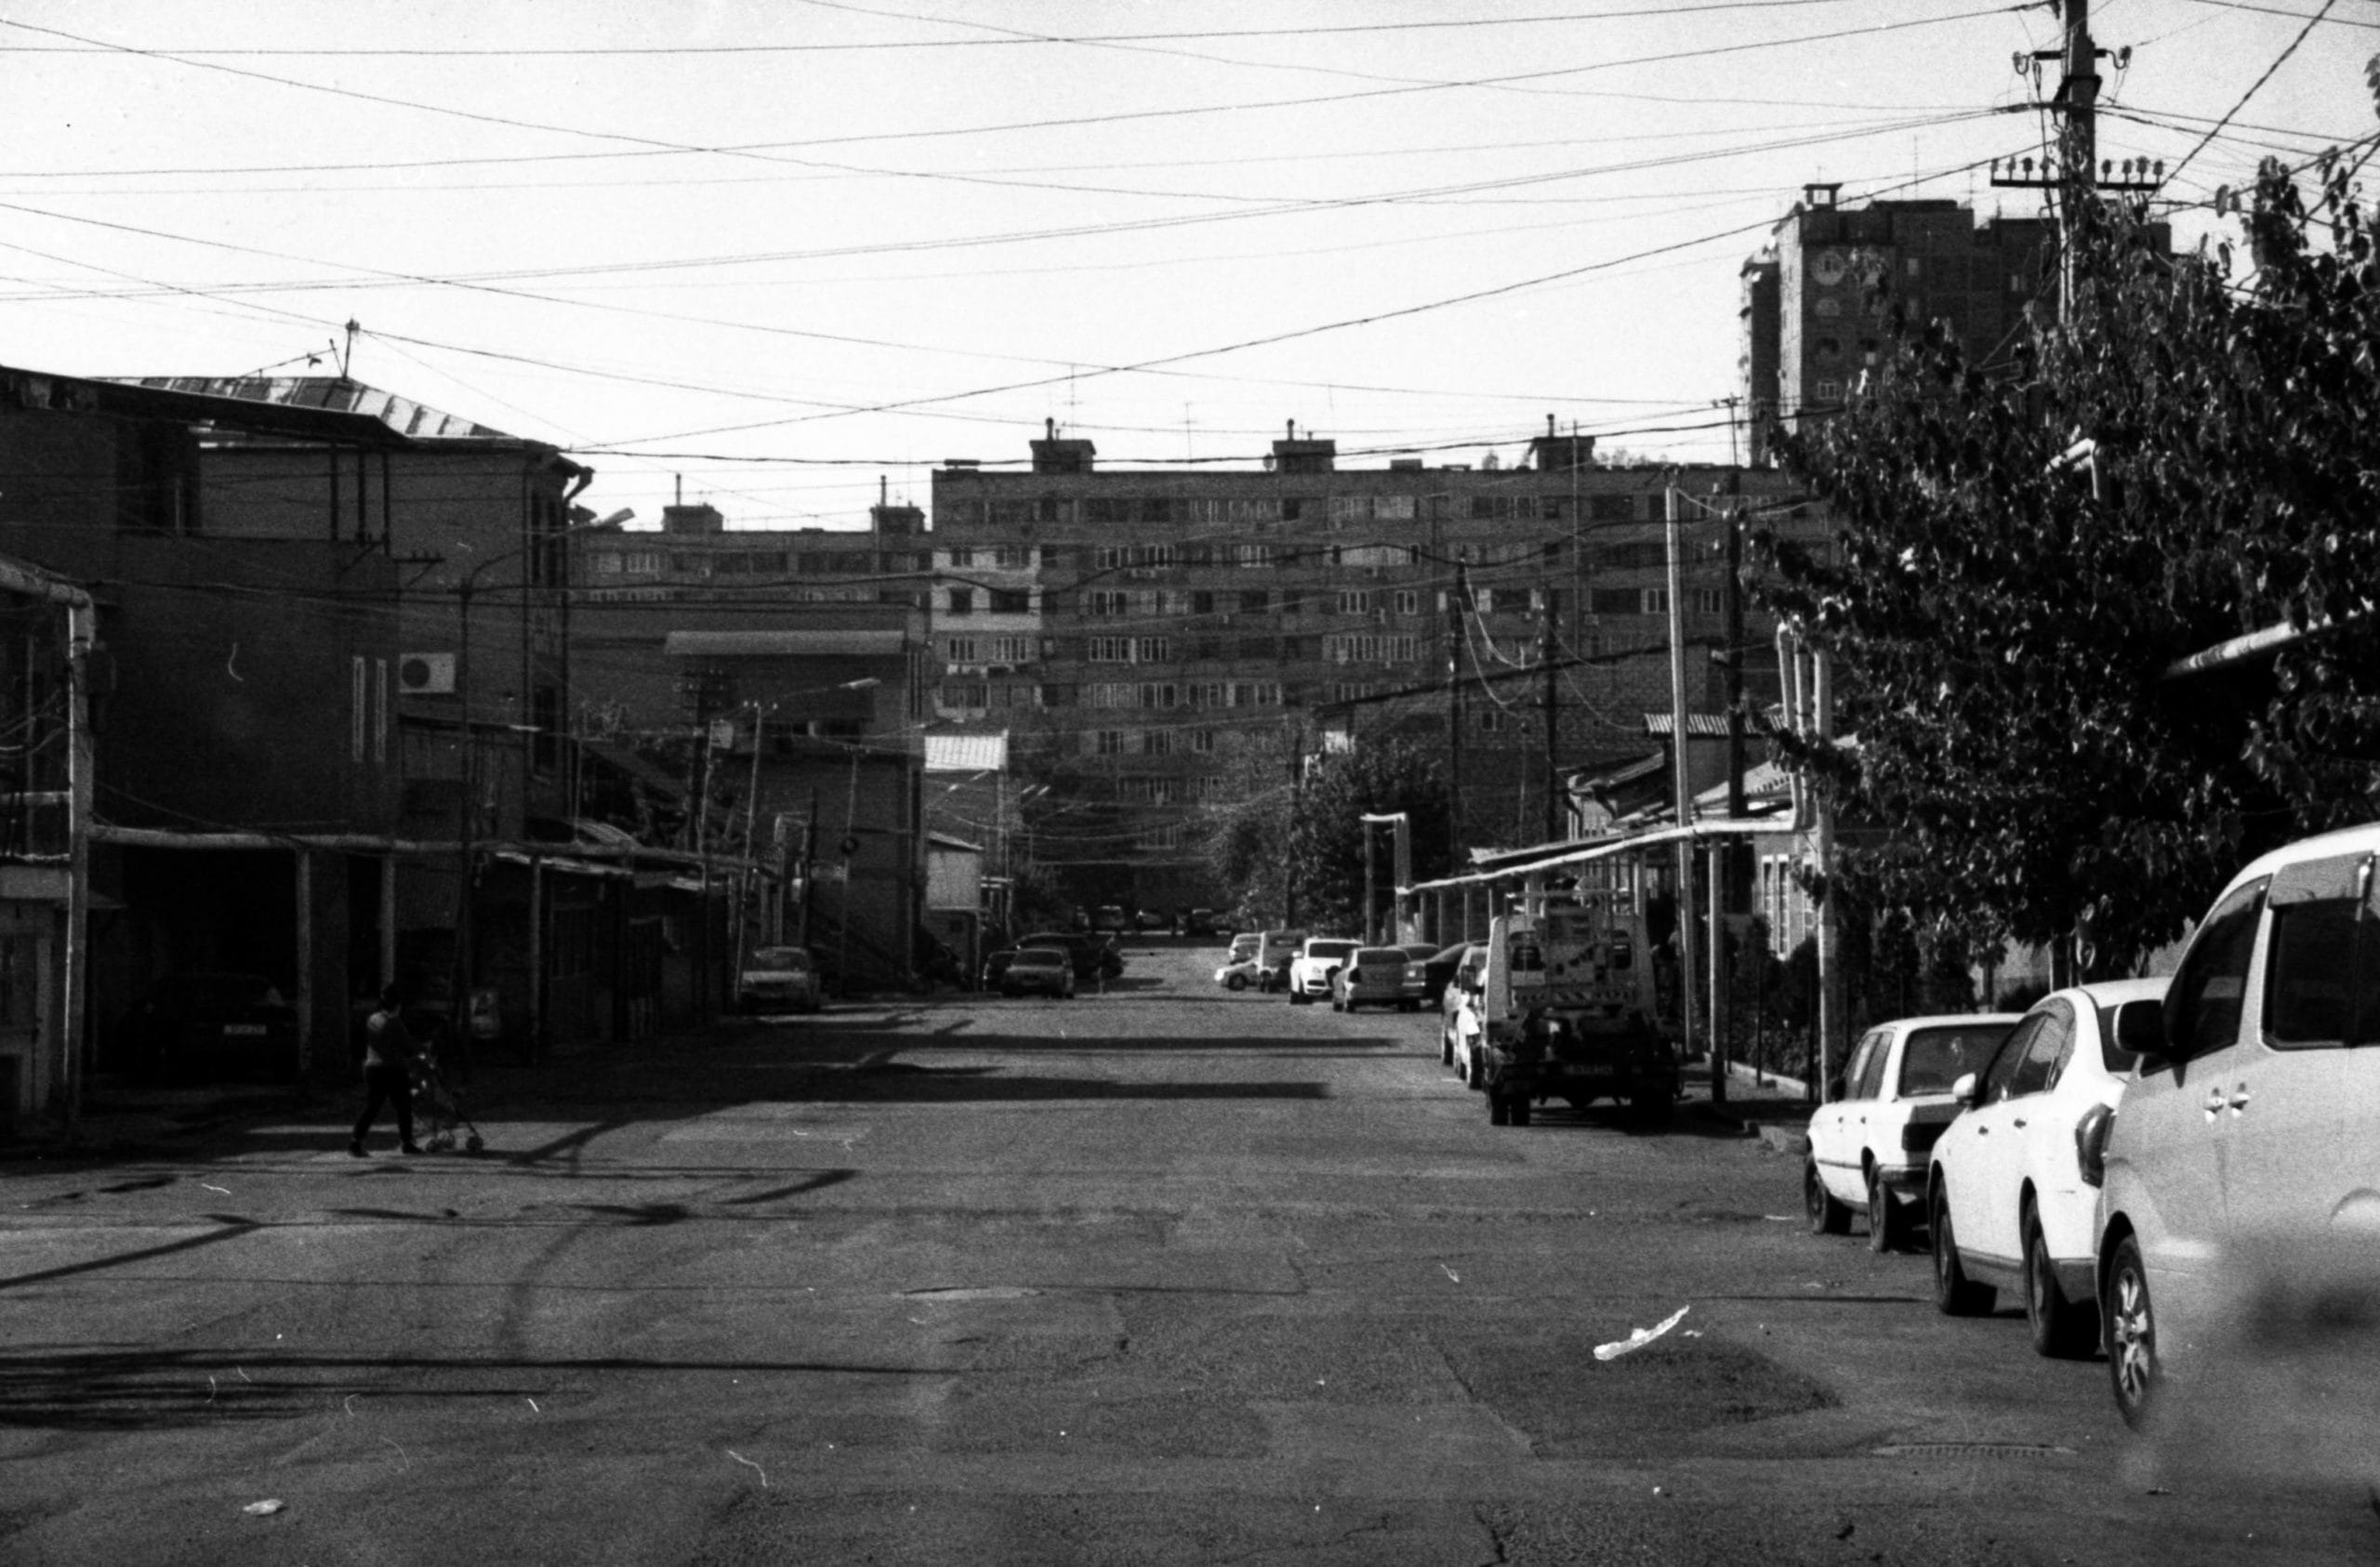 Photographie en noir et blanc d'une rue dans laquelle il n'y a aucune trace d'être humain, comme si le paysage urbain avait été vidé des hommes.